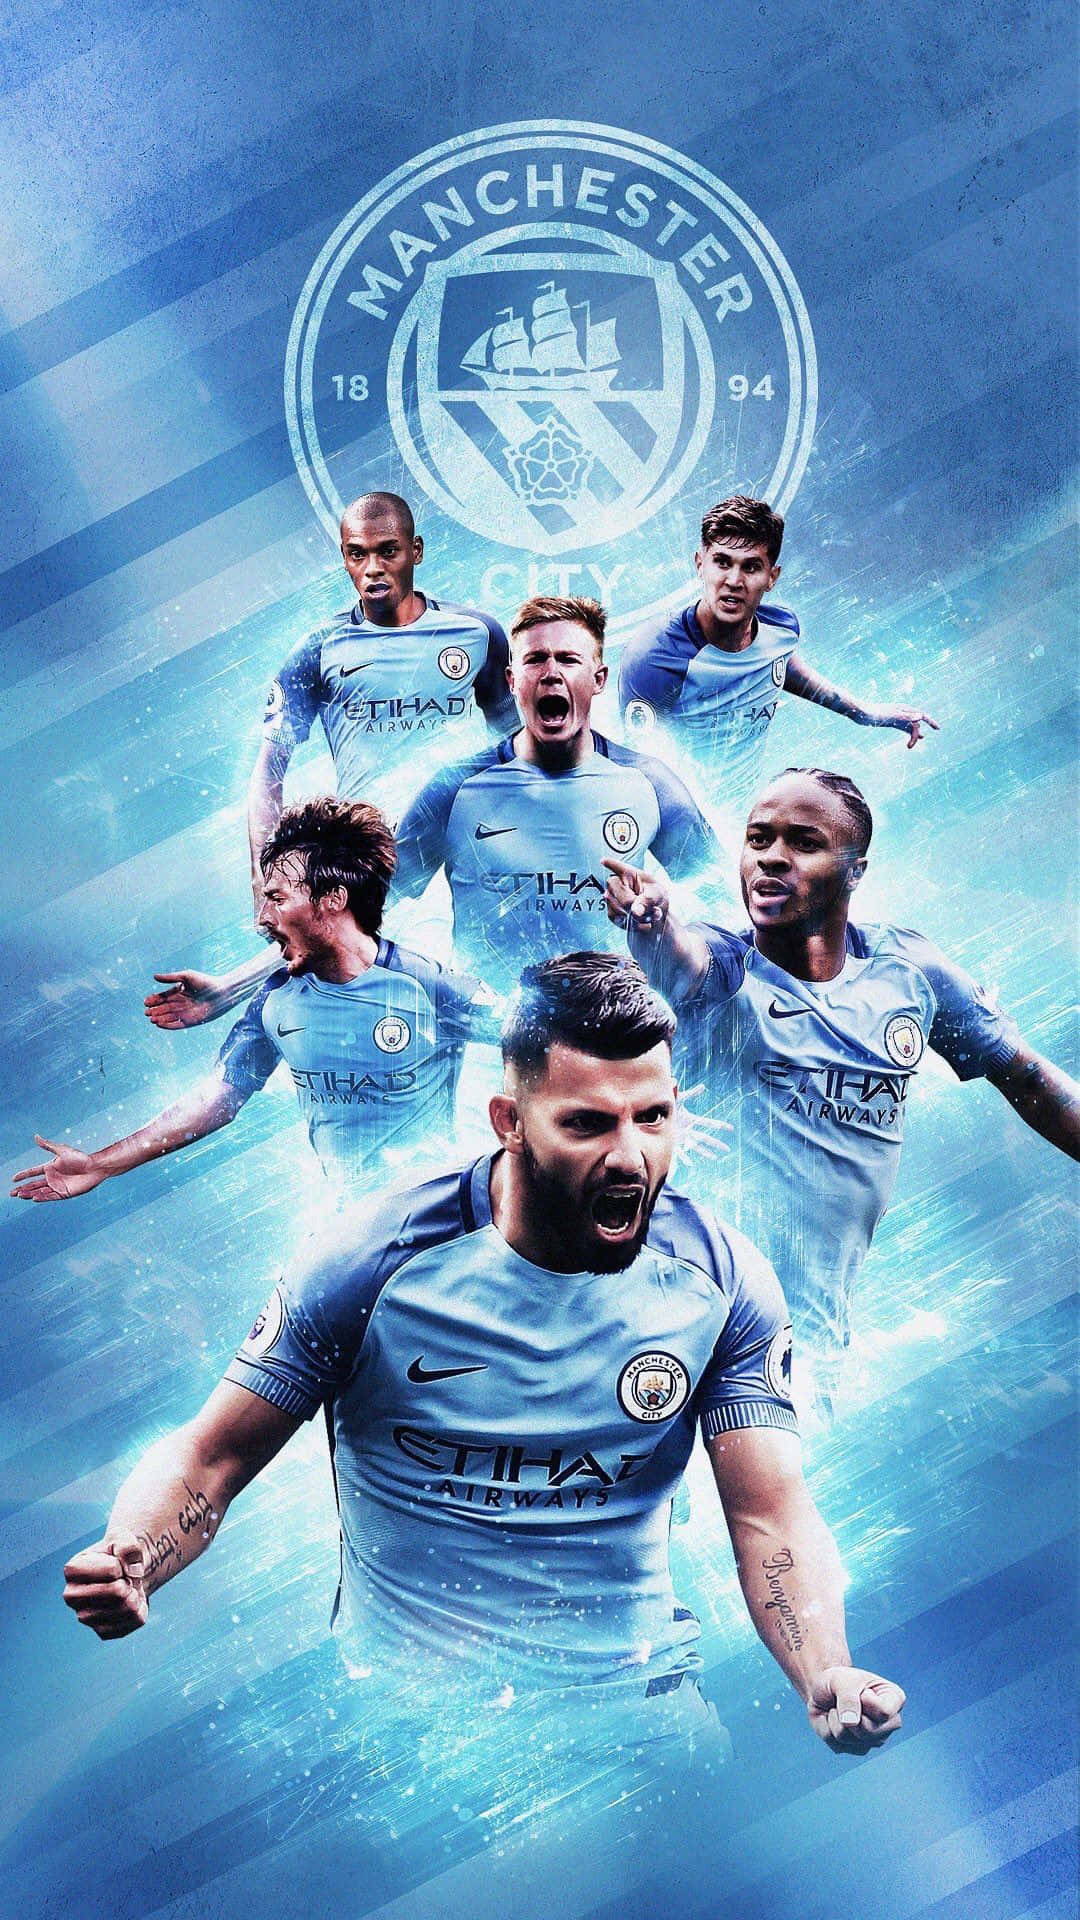 Vis din støtte til Borgerne med denne en-af-en-slags Manchester City iPhone 6 wallpaper. Wallpaper